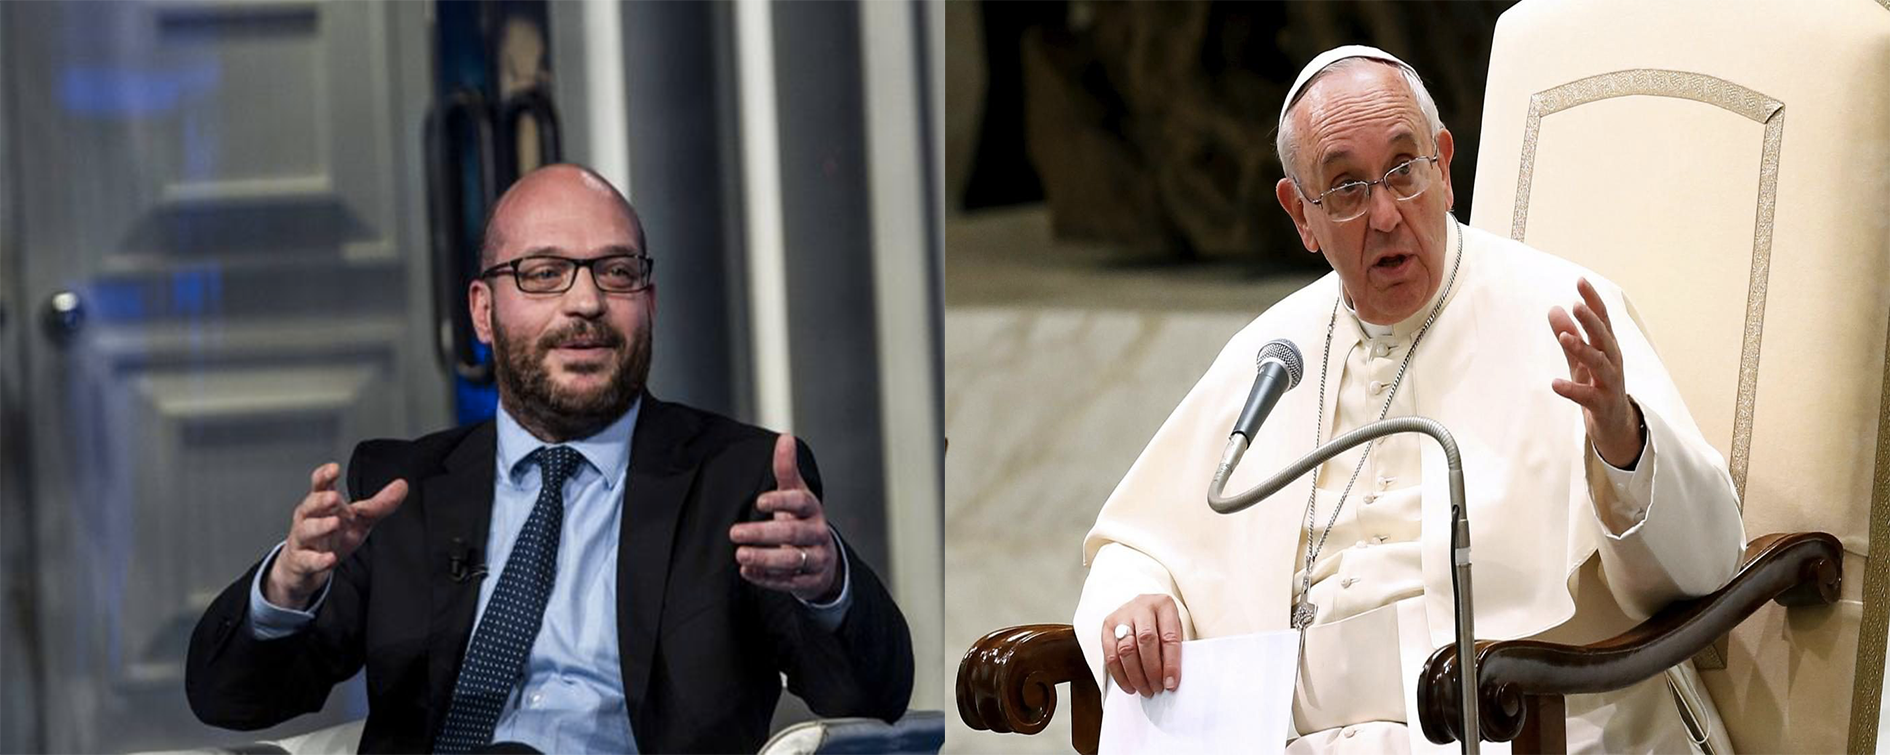 Il Papa e il ministro Fontana hanno le stesse idee